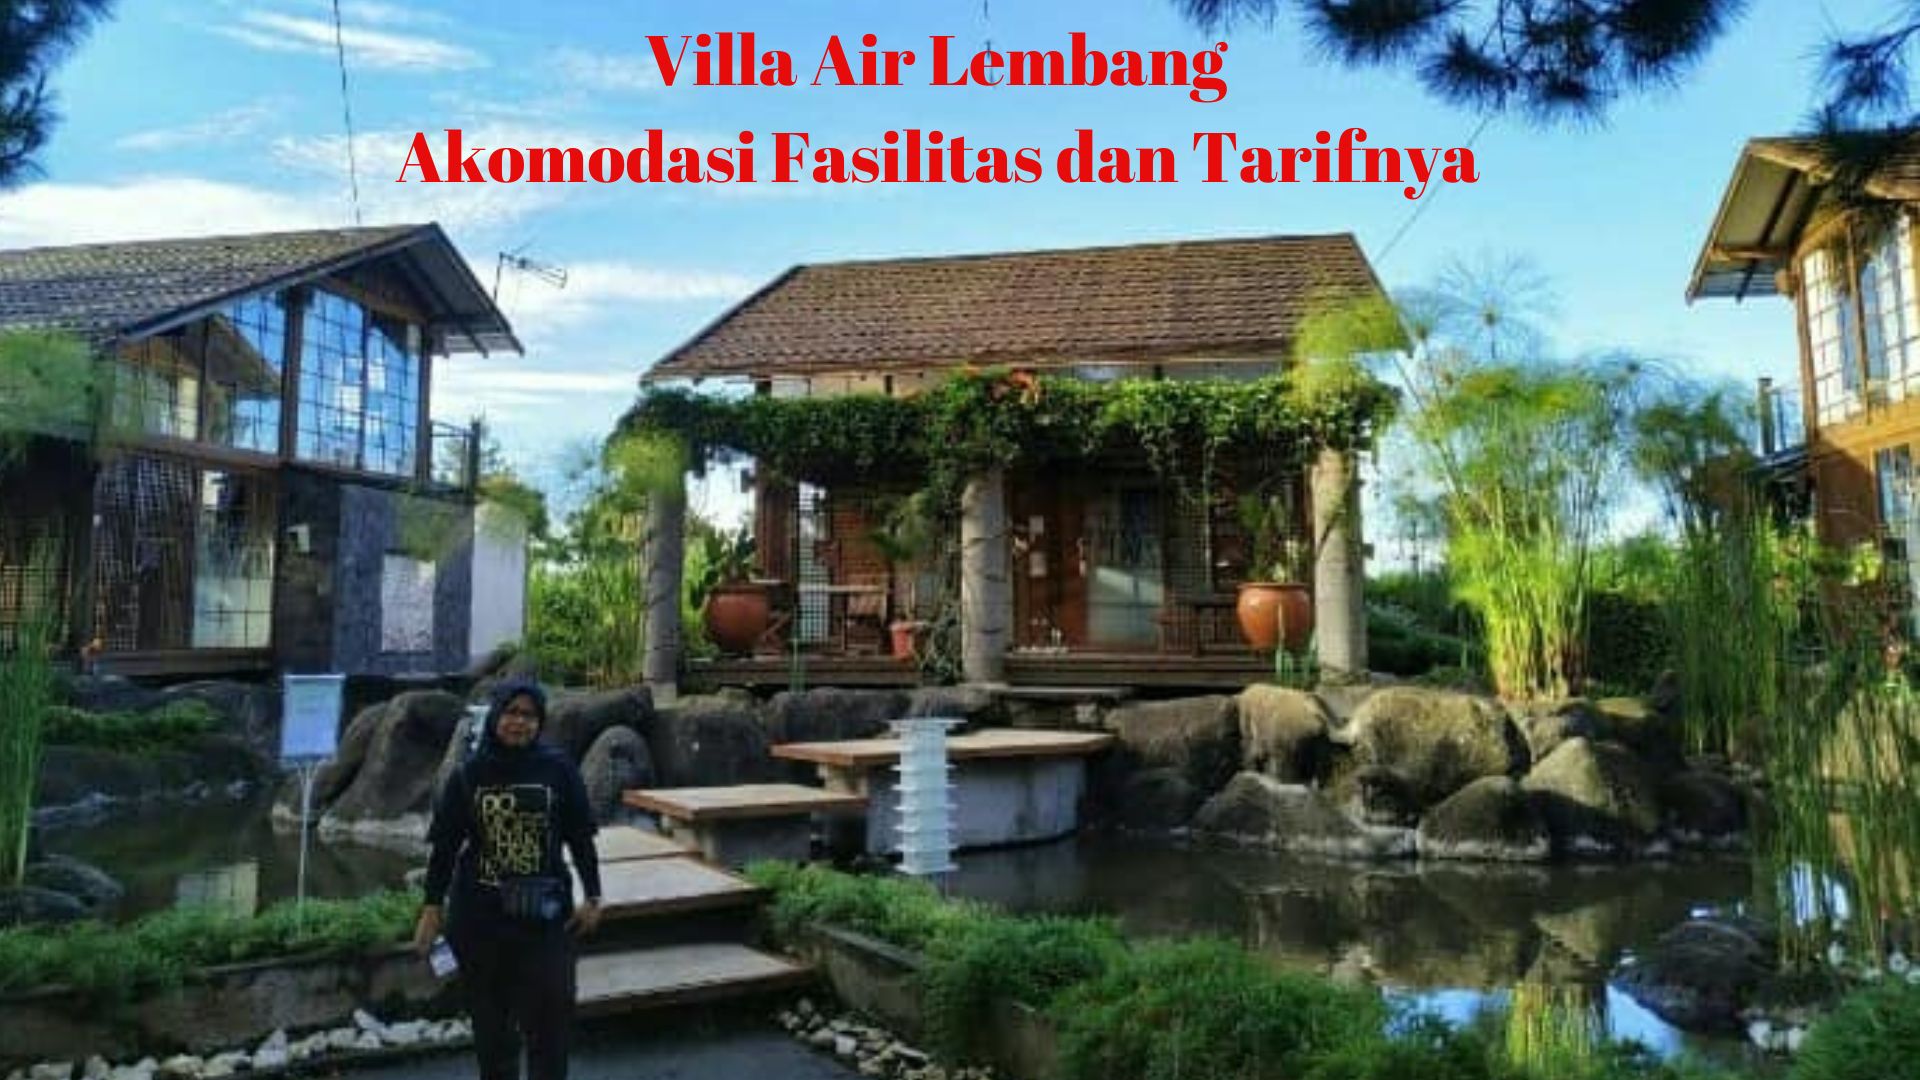 Villa Air Lembang, Akomodasi Fasilitas dan Tarifnya